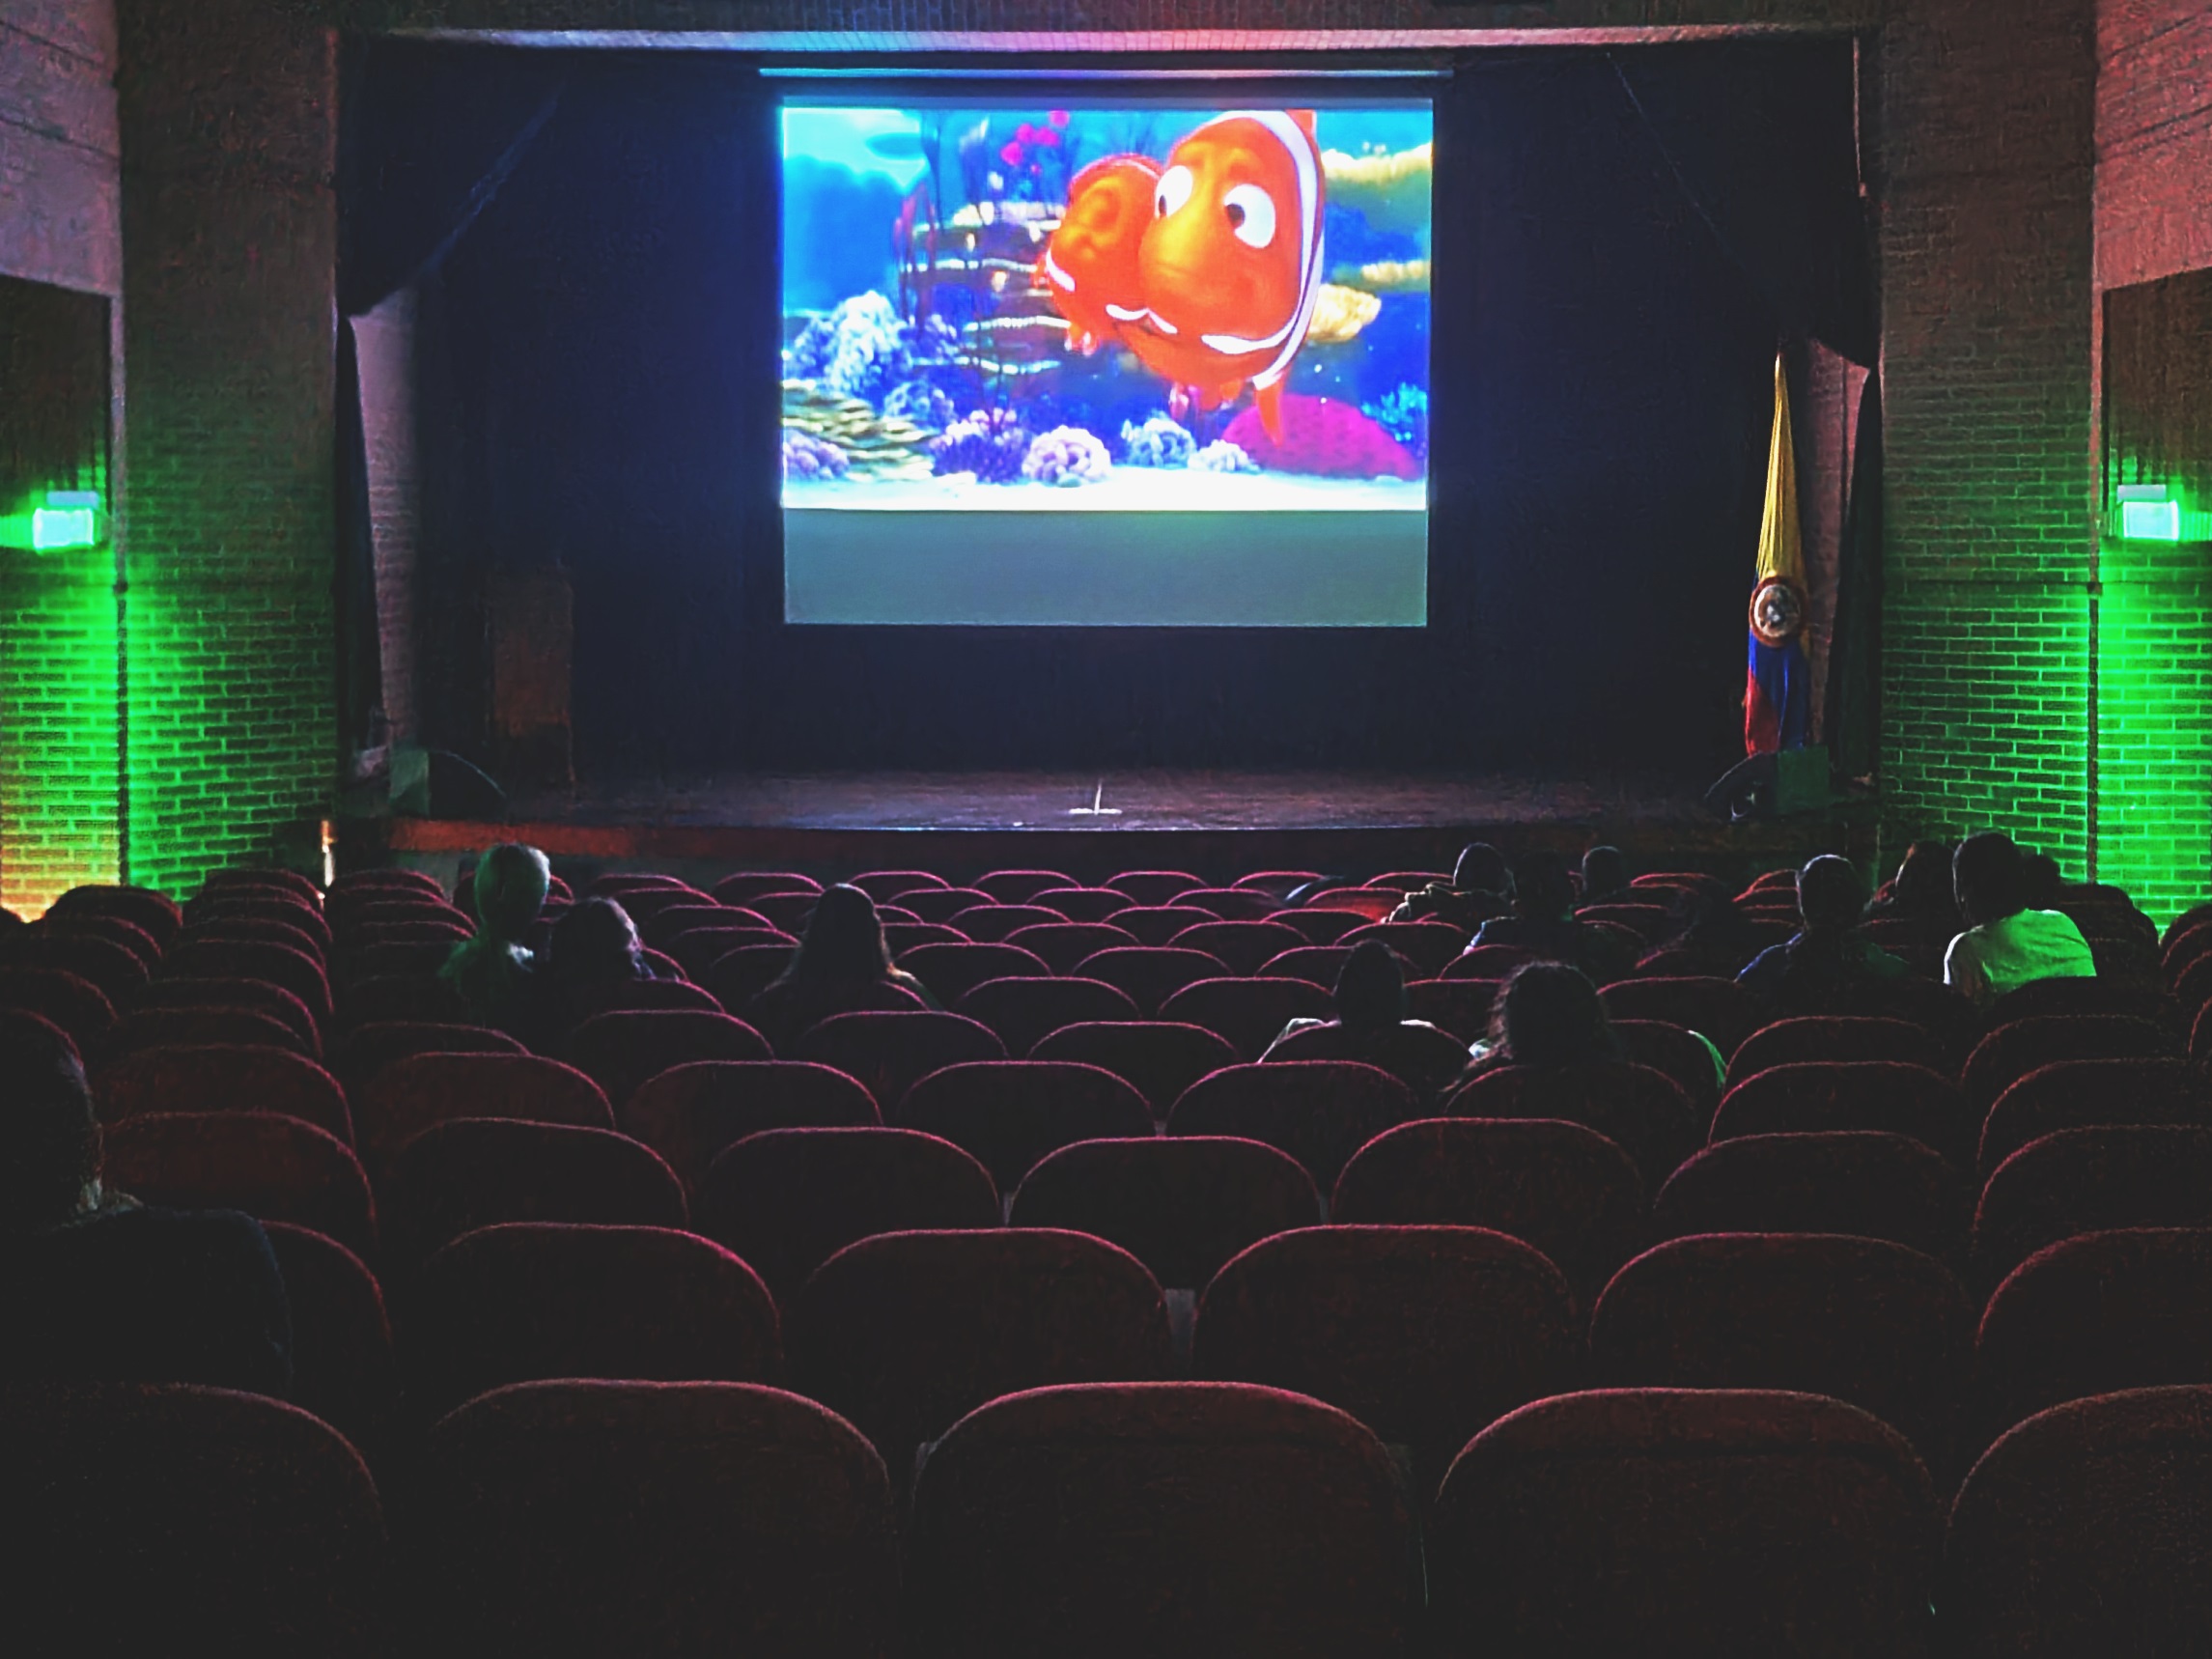 sala de cine con familias viendo una película animada.